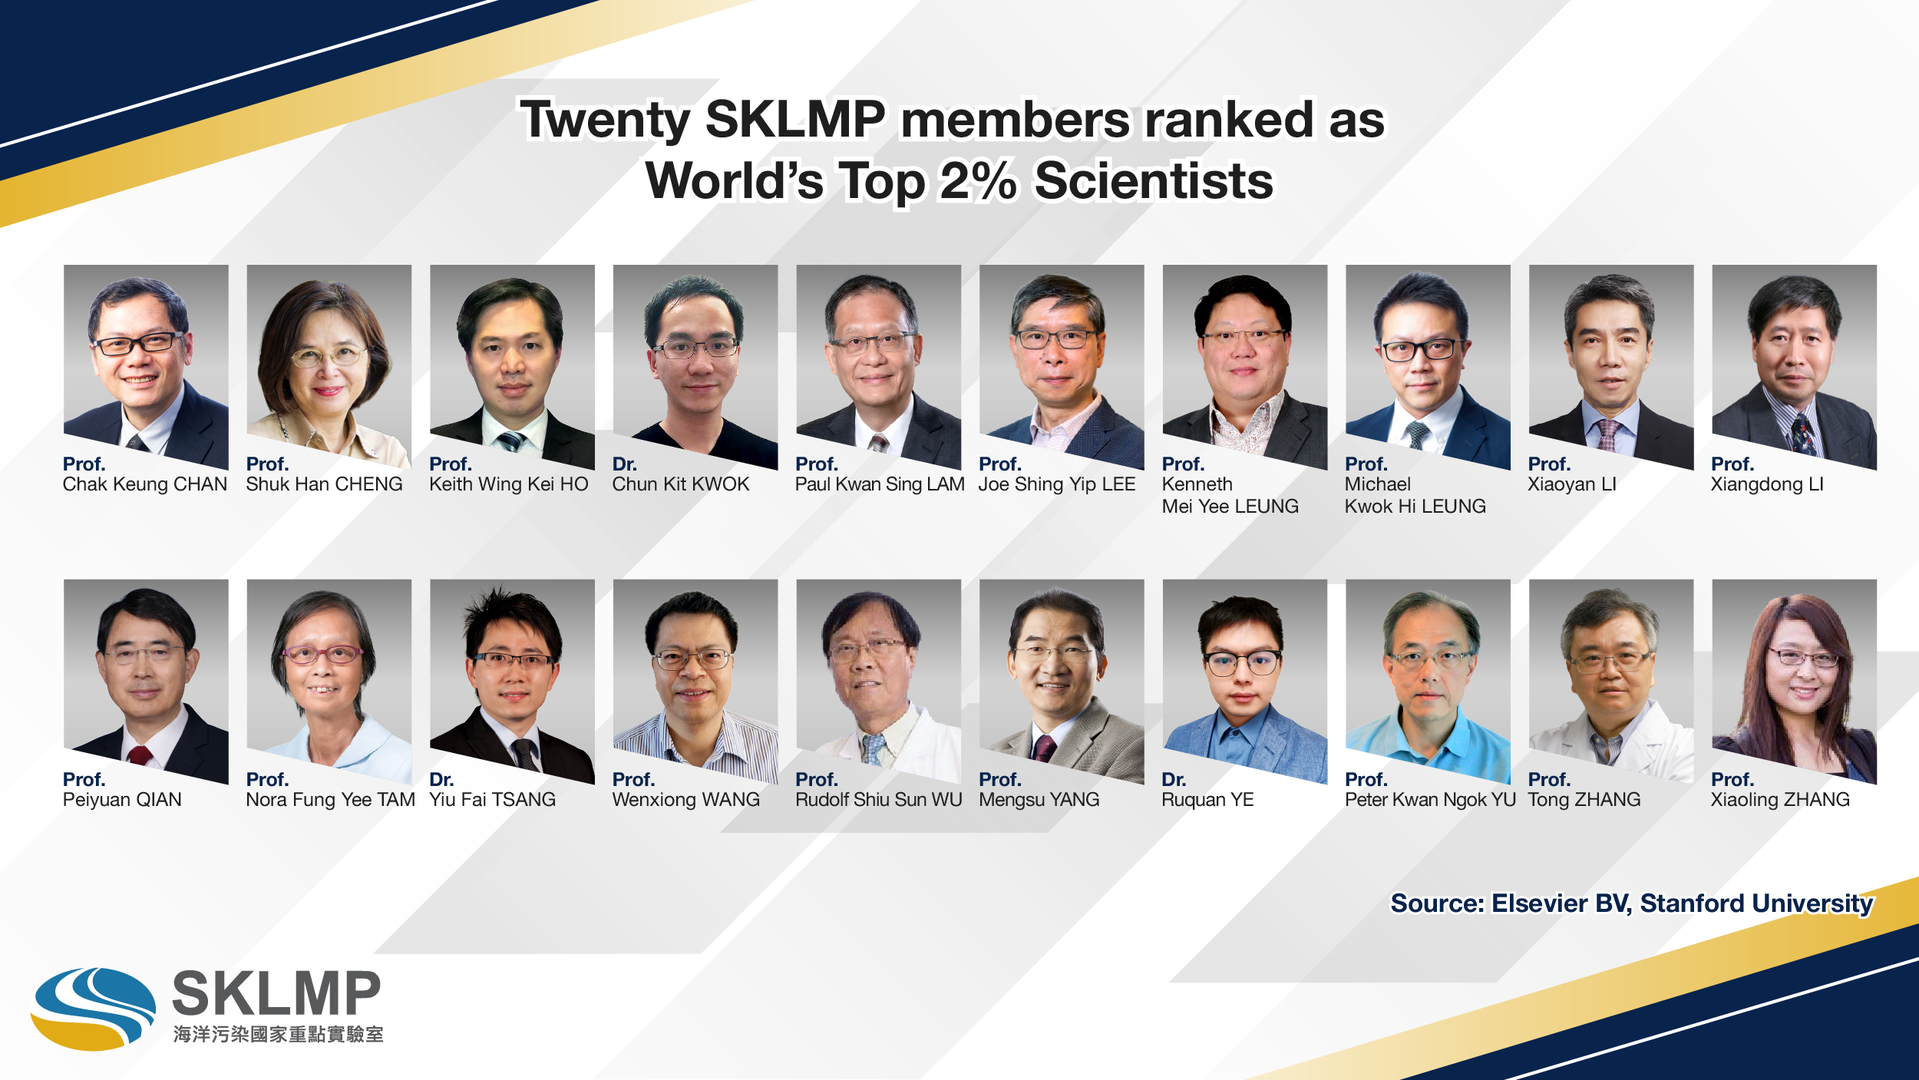 Twenty SKLMP members ranked as World’s Top 2% Scientists by Stanford University.